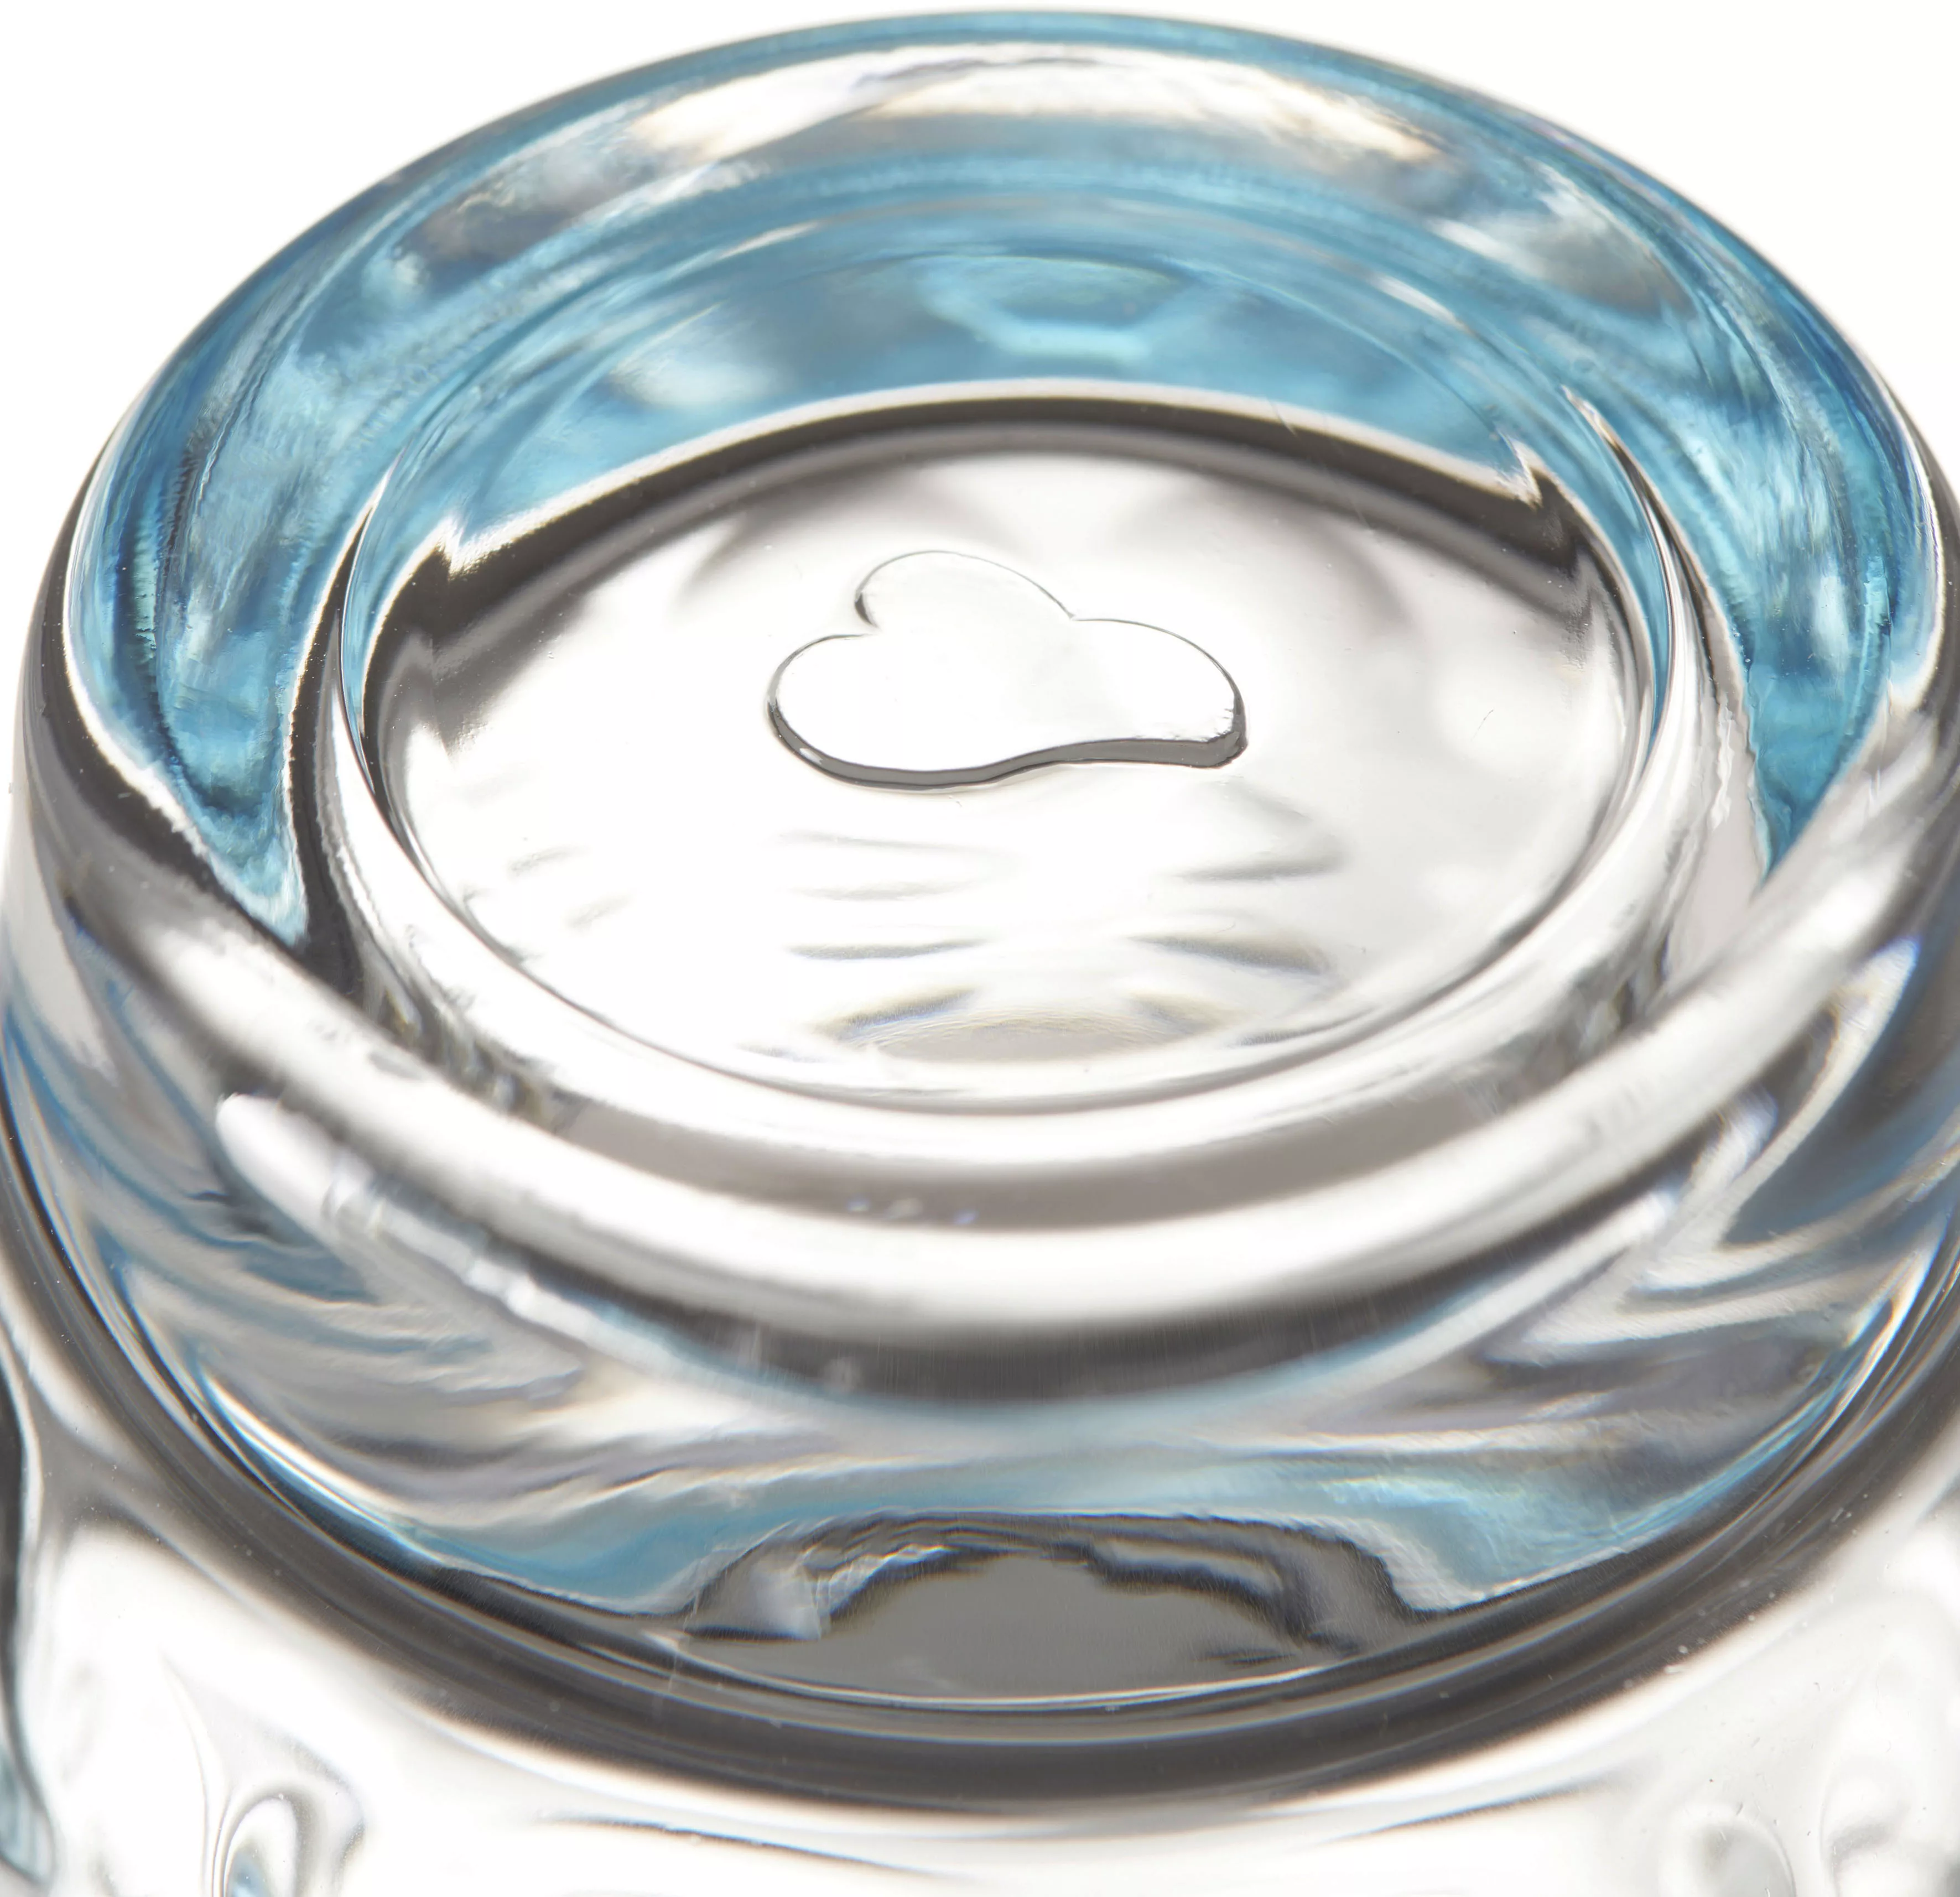 LEONARDO Longdrinkglas »OPTIC«, (Set, 6 tlg.), 300 ml, 6-teilig günstig online kaufen